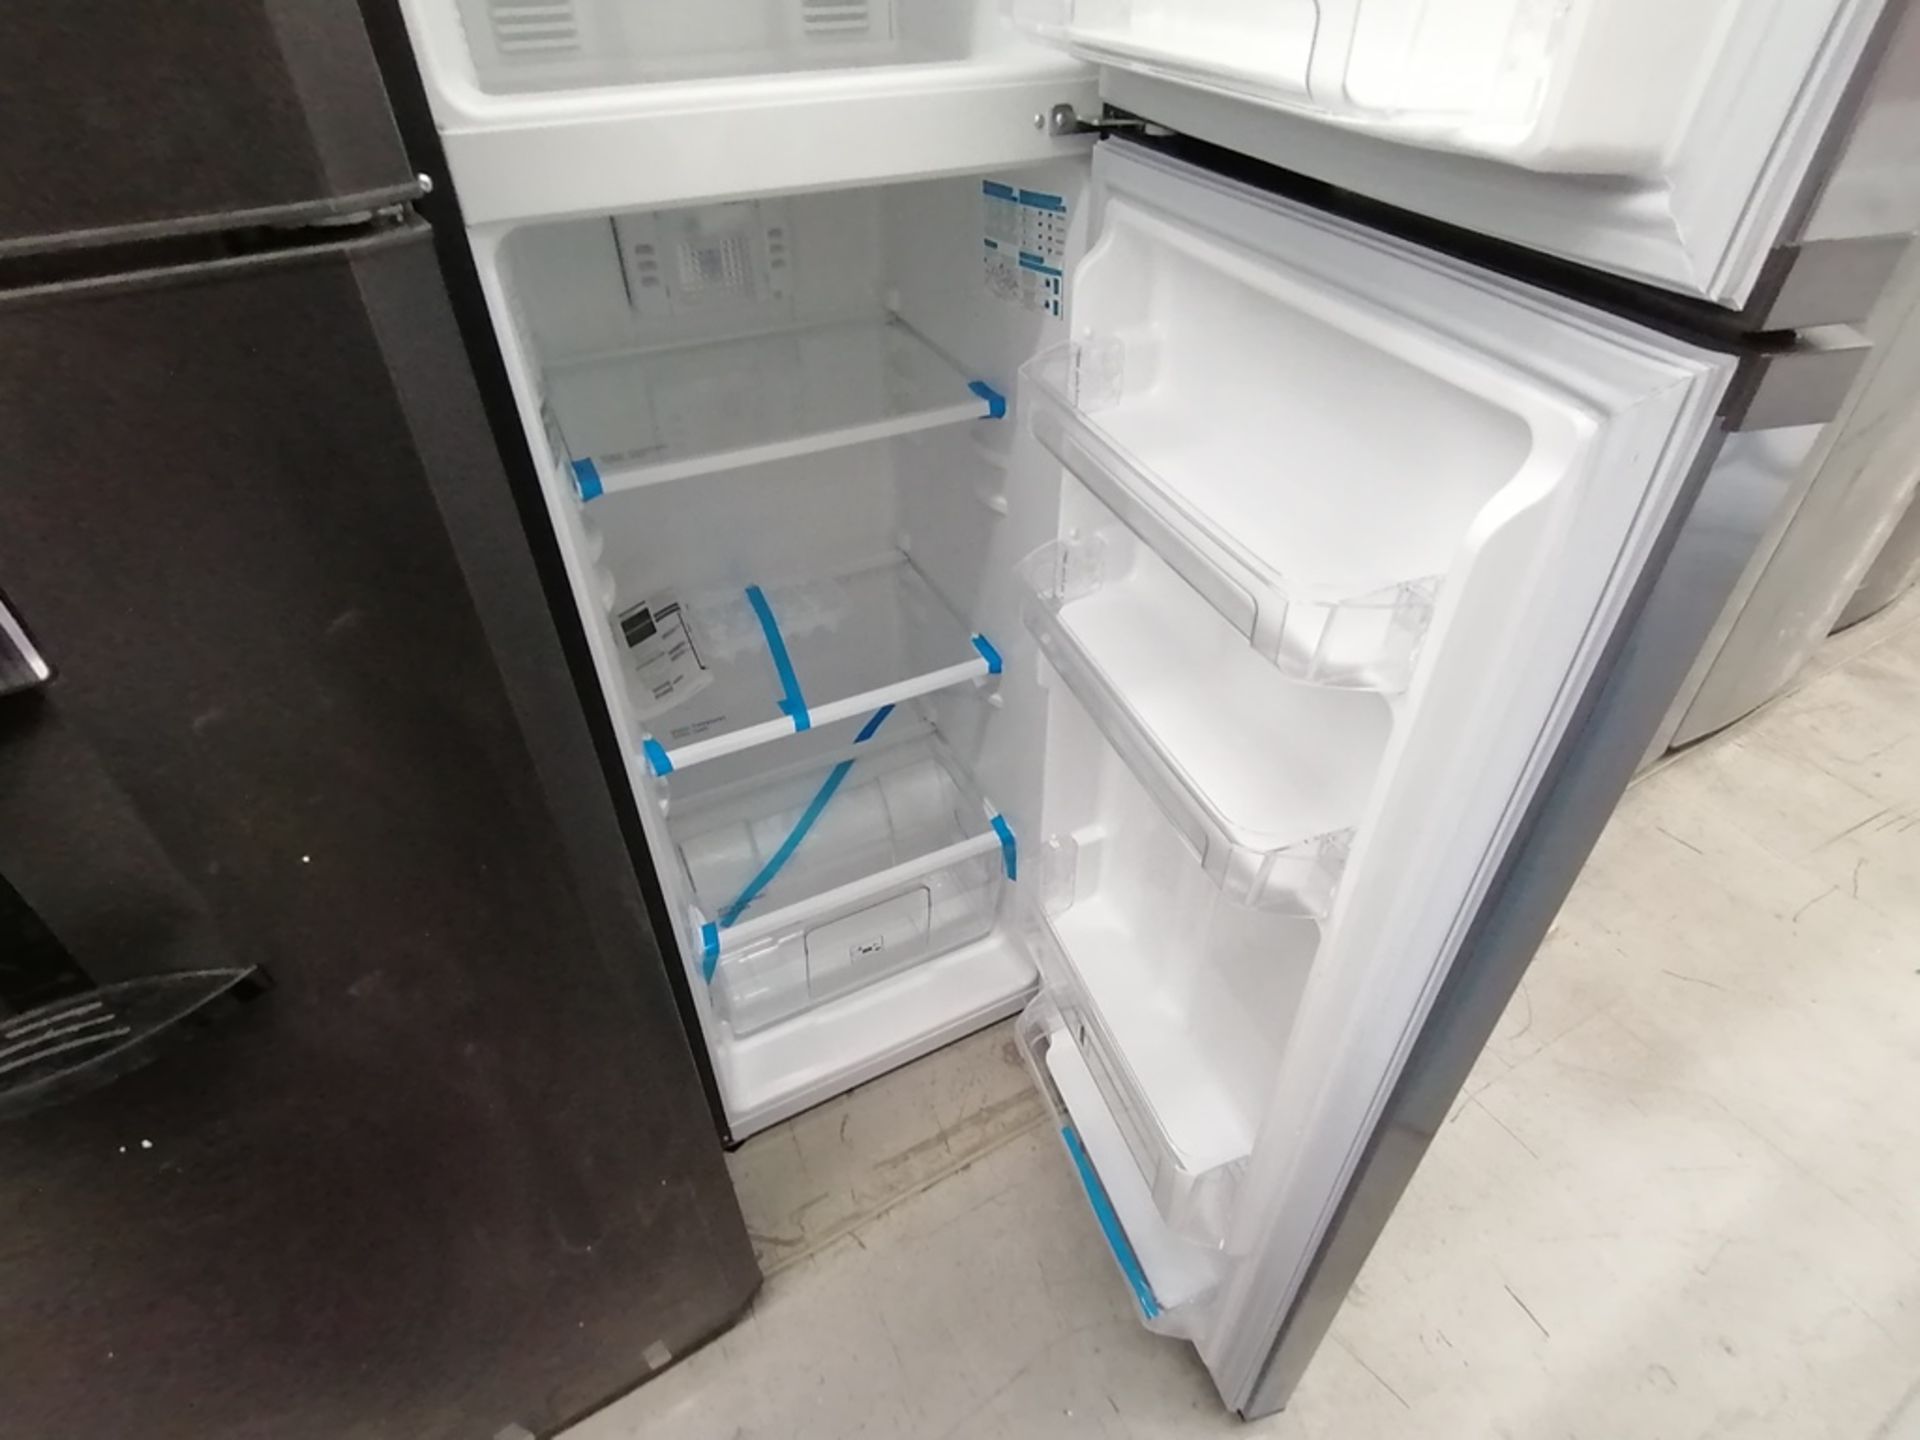 Lote de 2 refrigeradores incluye: 1 Refrigerador, Marca Mabe, Modelo RMA1025VMX, Serie 2111B618024, - Image 5 of 15